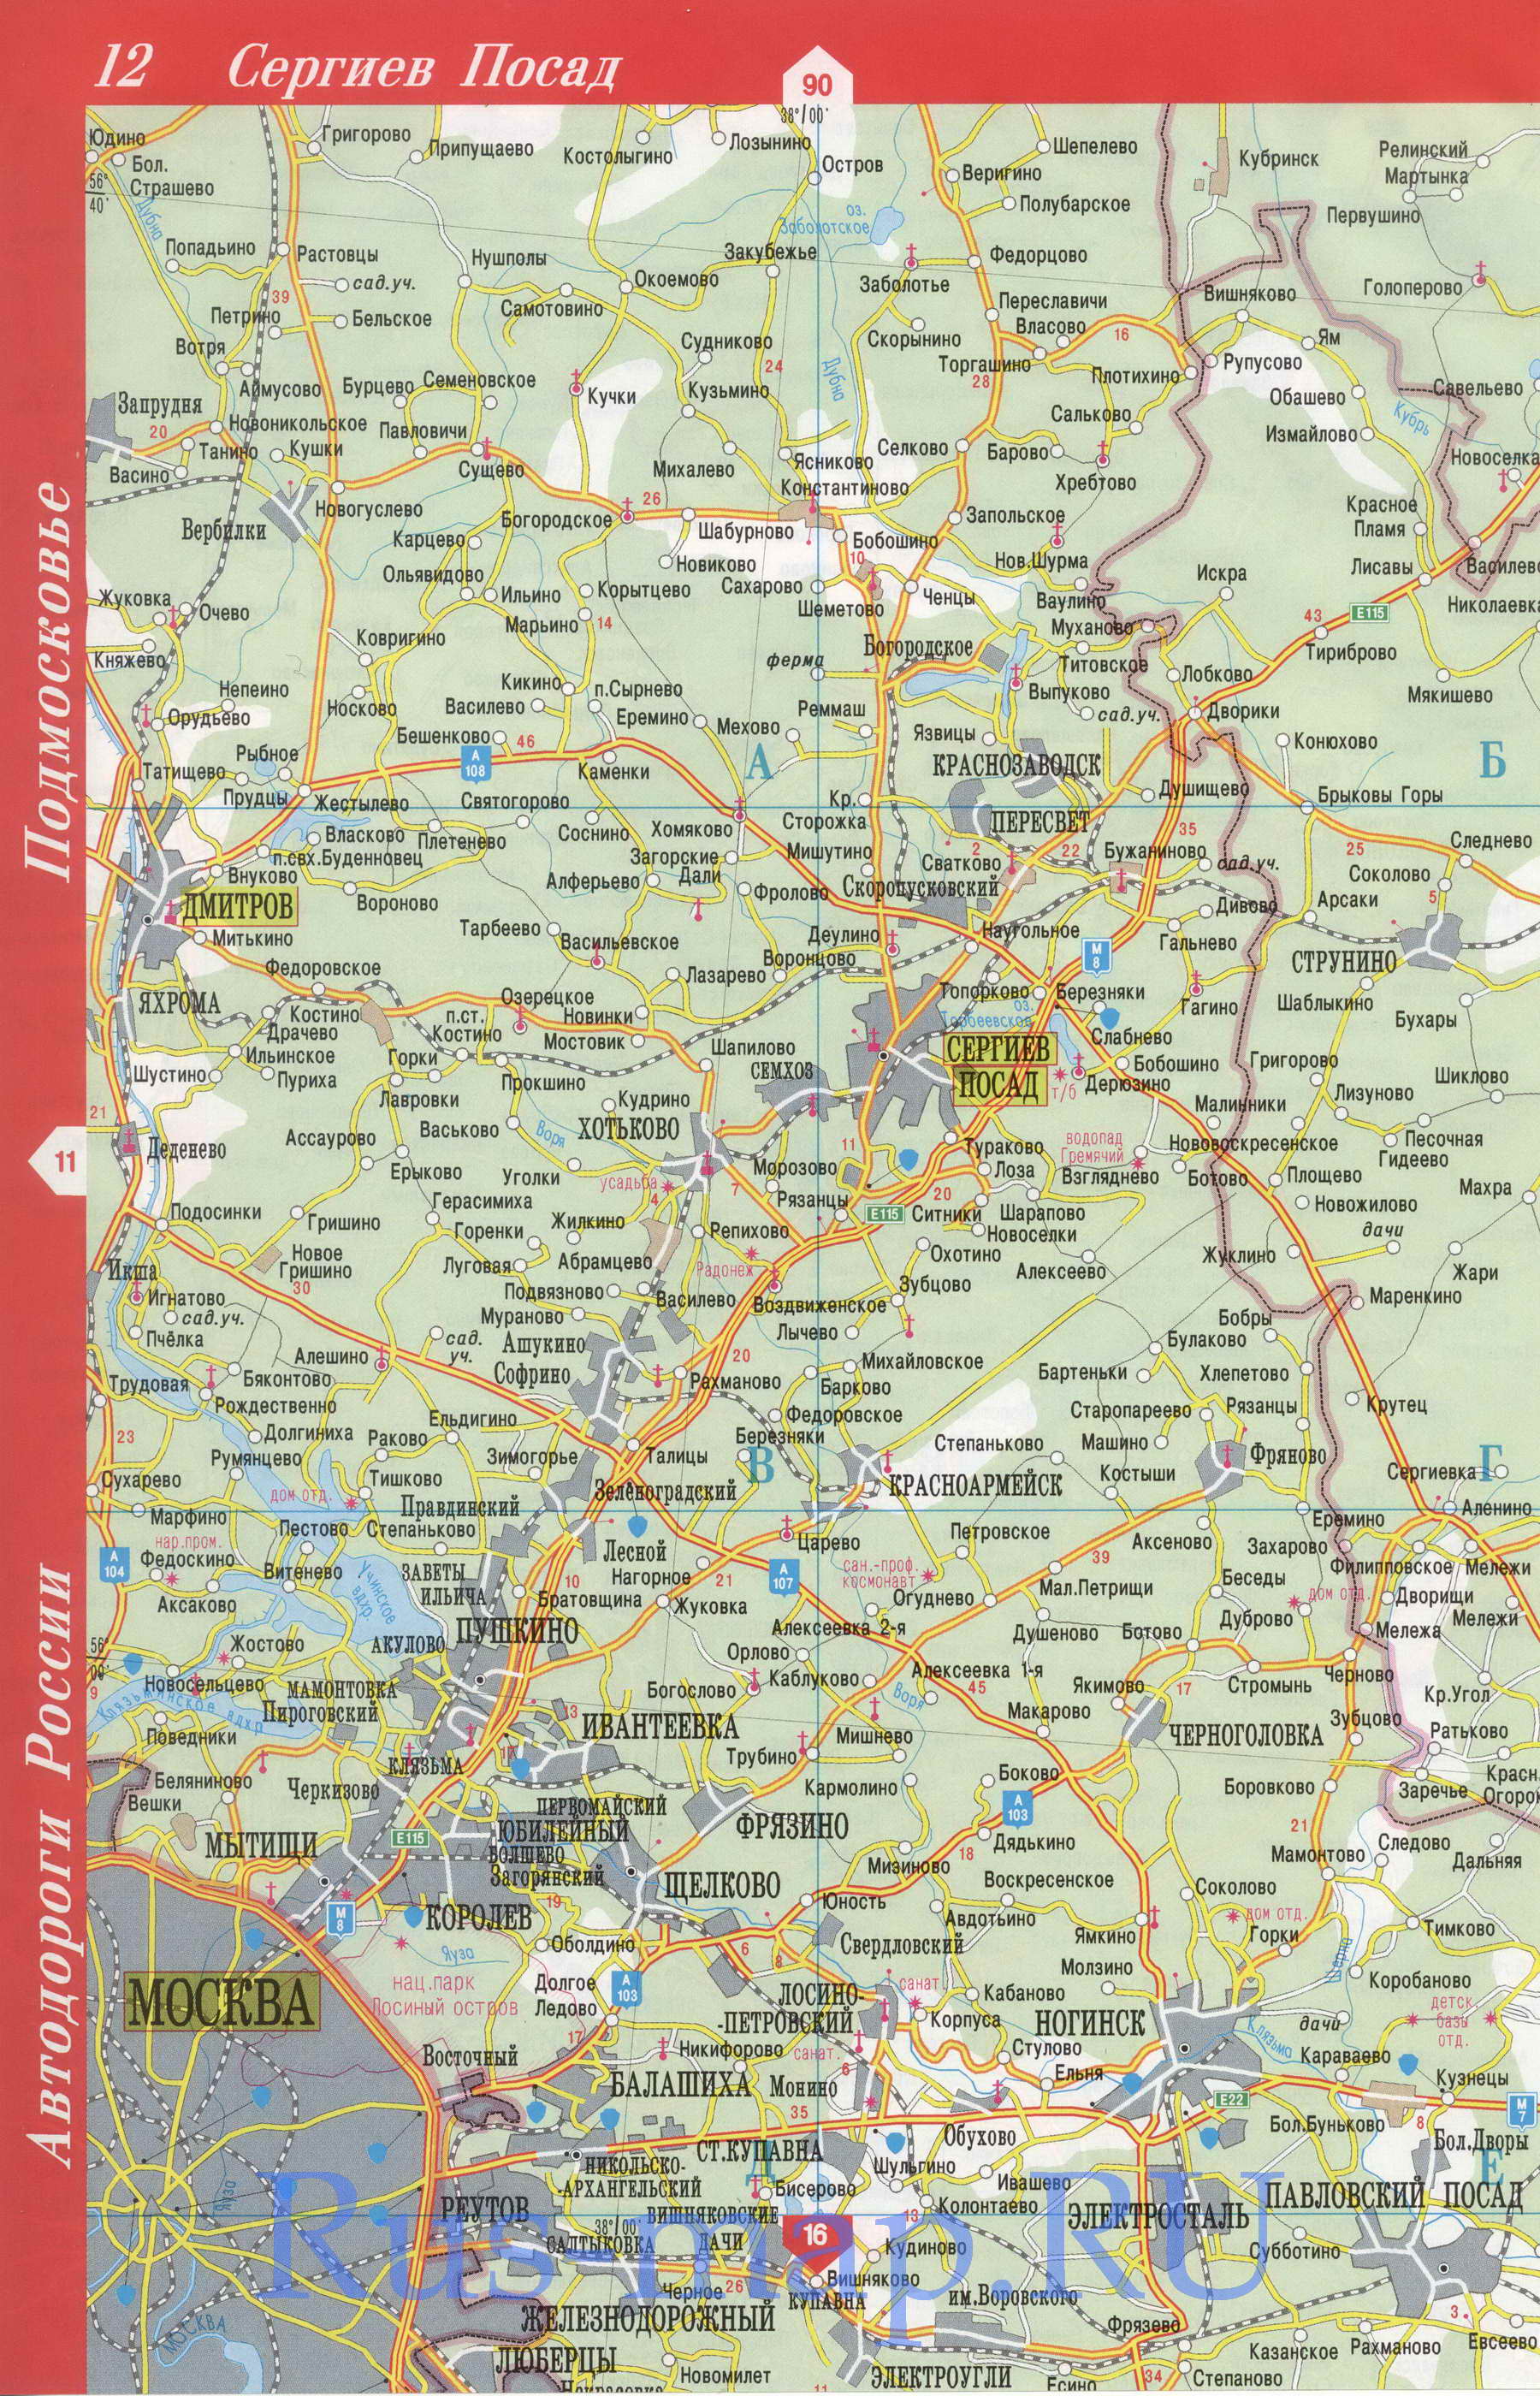  Карта Московской области. Подробная карта Московская область. Большая карта Московской обл, C0 - 